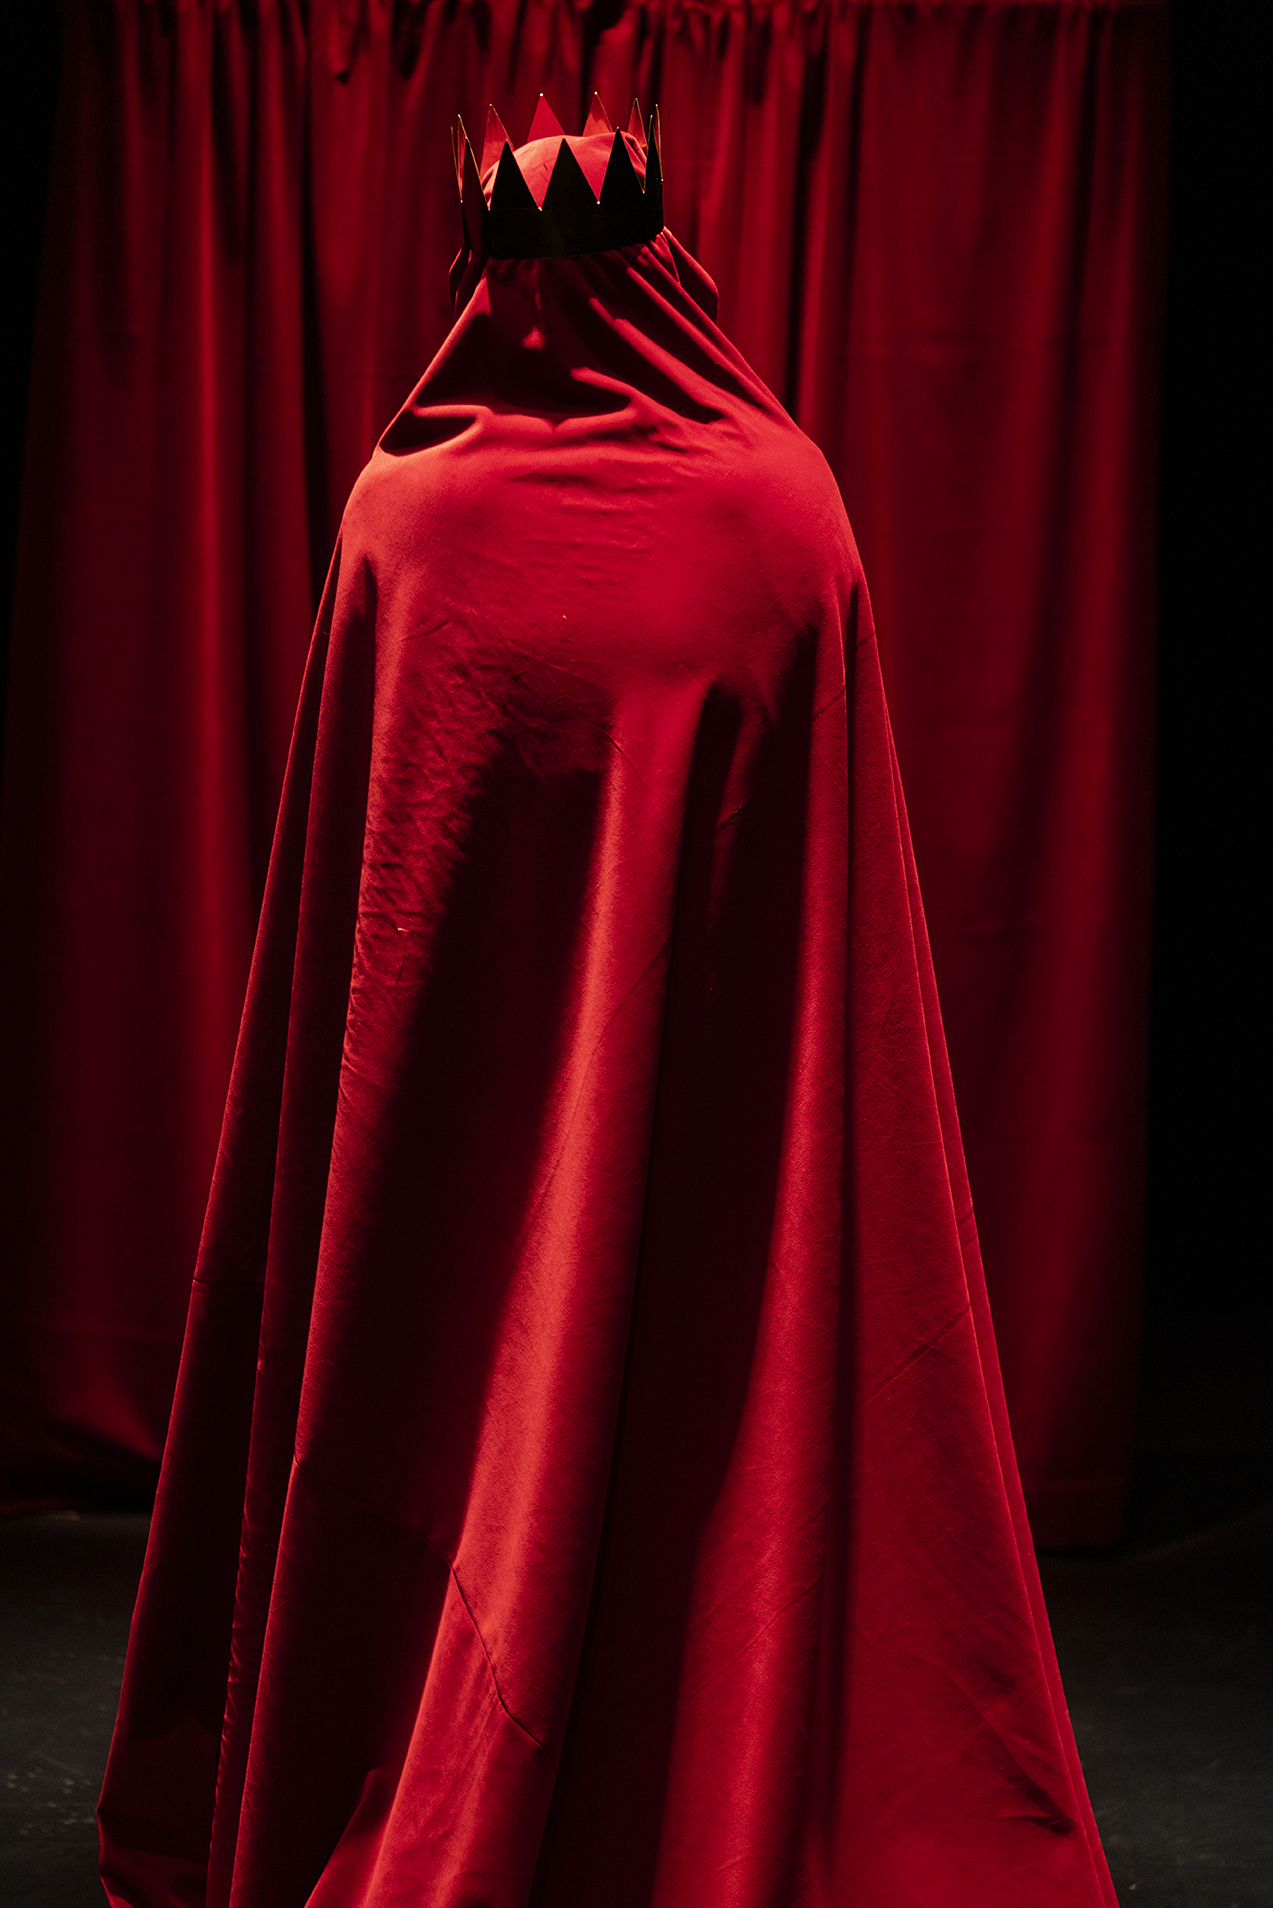 Devant un rideau rouge, se tient de dos un personnage entièrement recouvert d'une cape rouge. Il porte une couronne rouge.